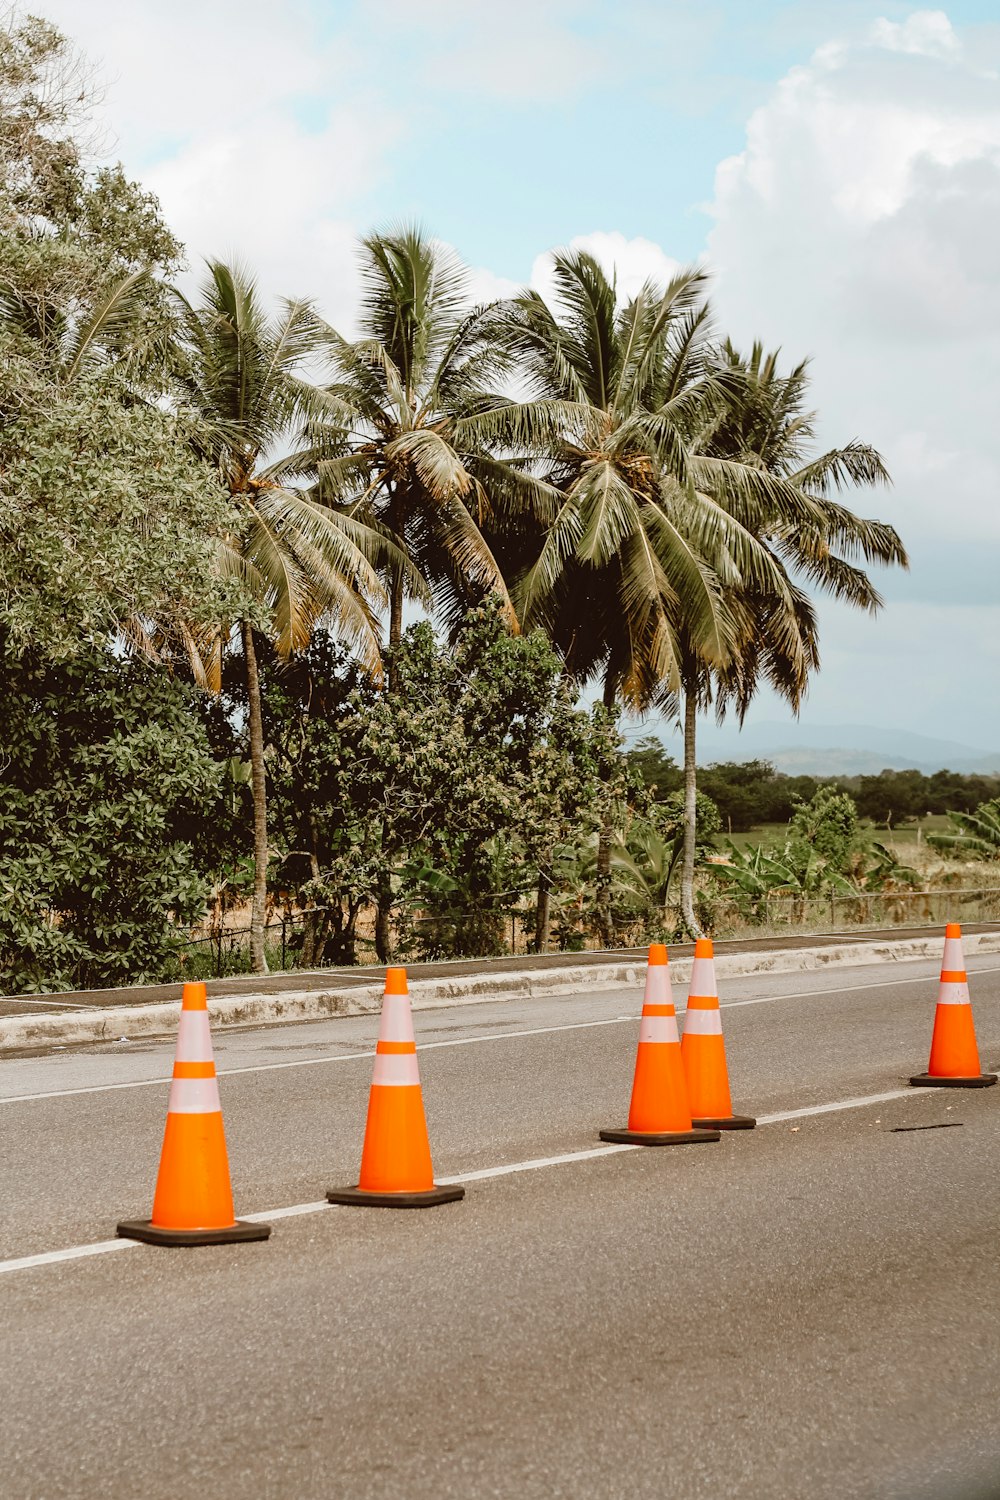 Cône de signalisation orange sur une route asphaltée grise pendant la journée